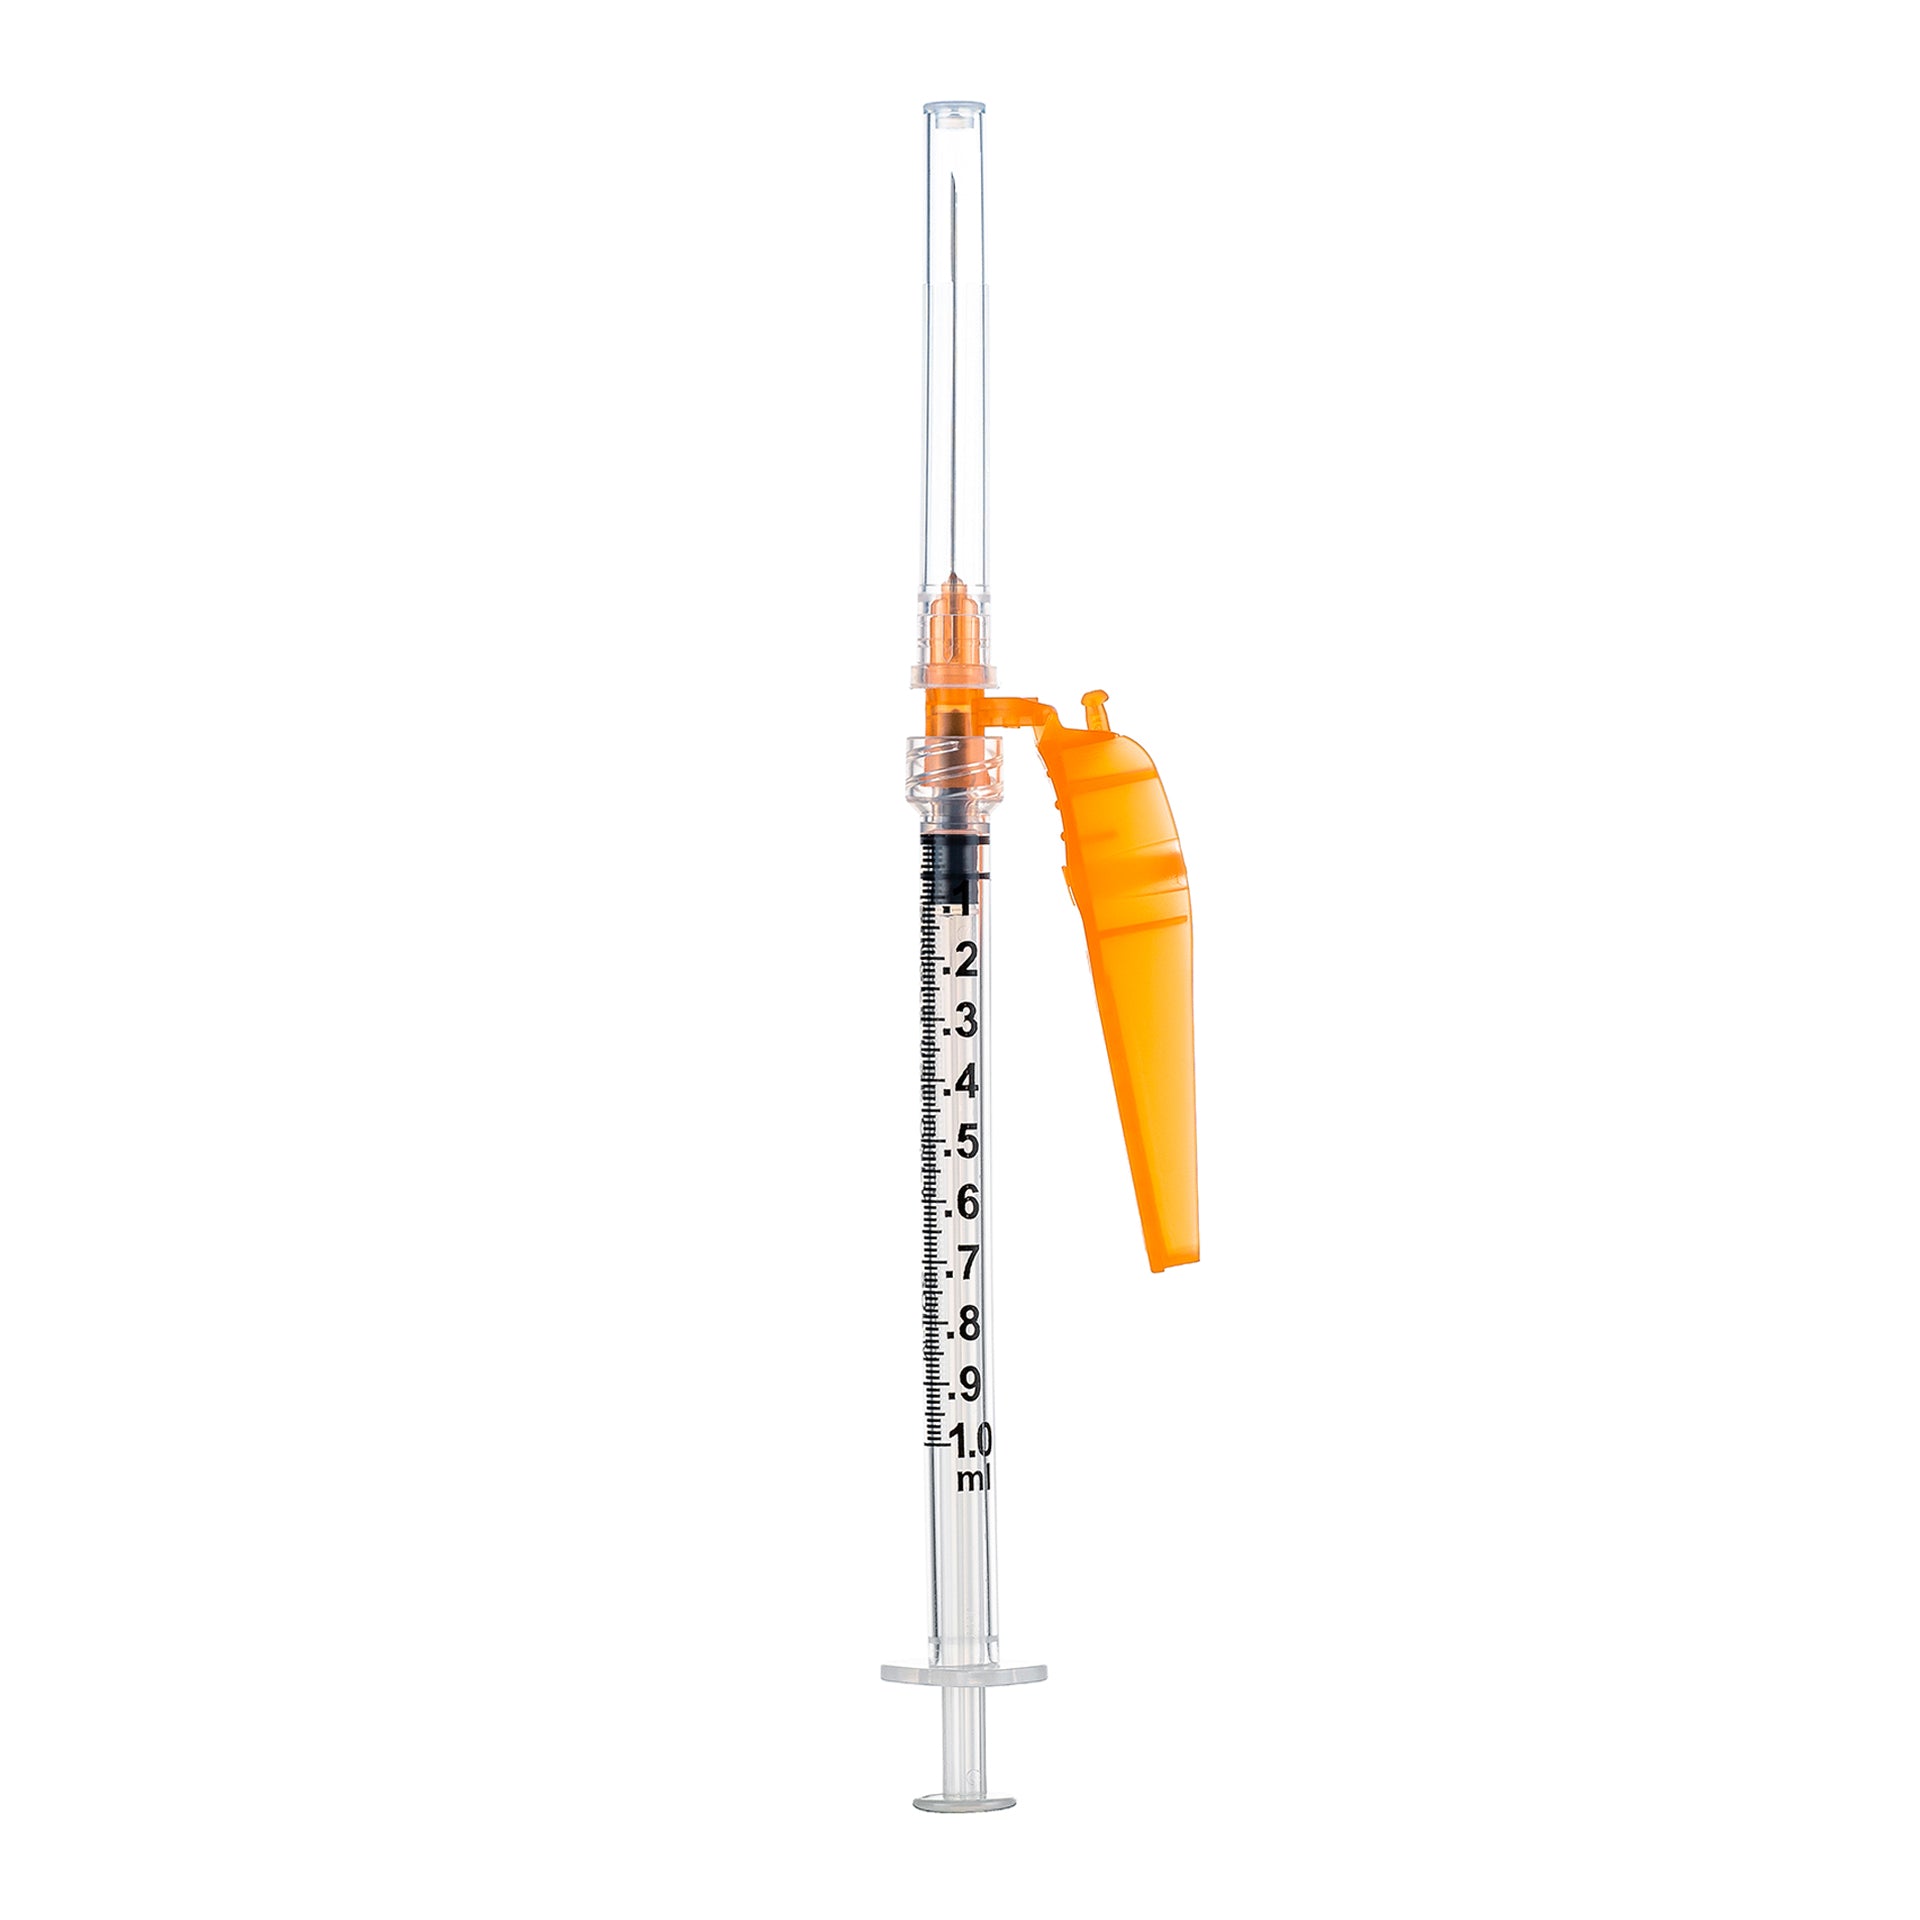 BX/50 - SOL-CARE 3ml Luer Lock Syringe w/Safety Needle 25G*1 (needle aside)